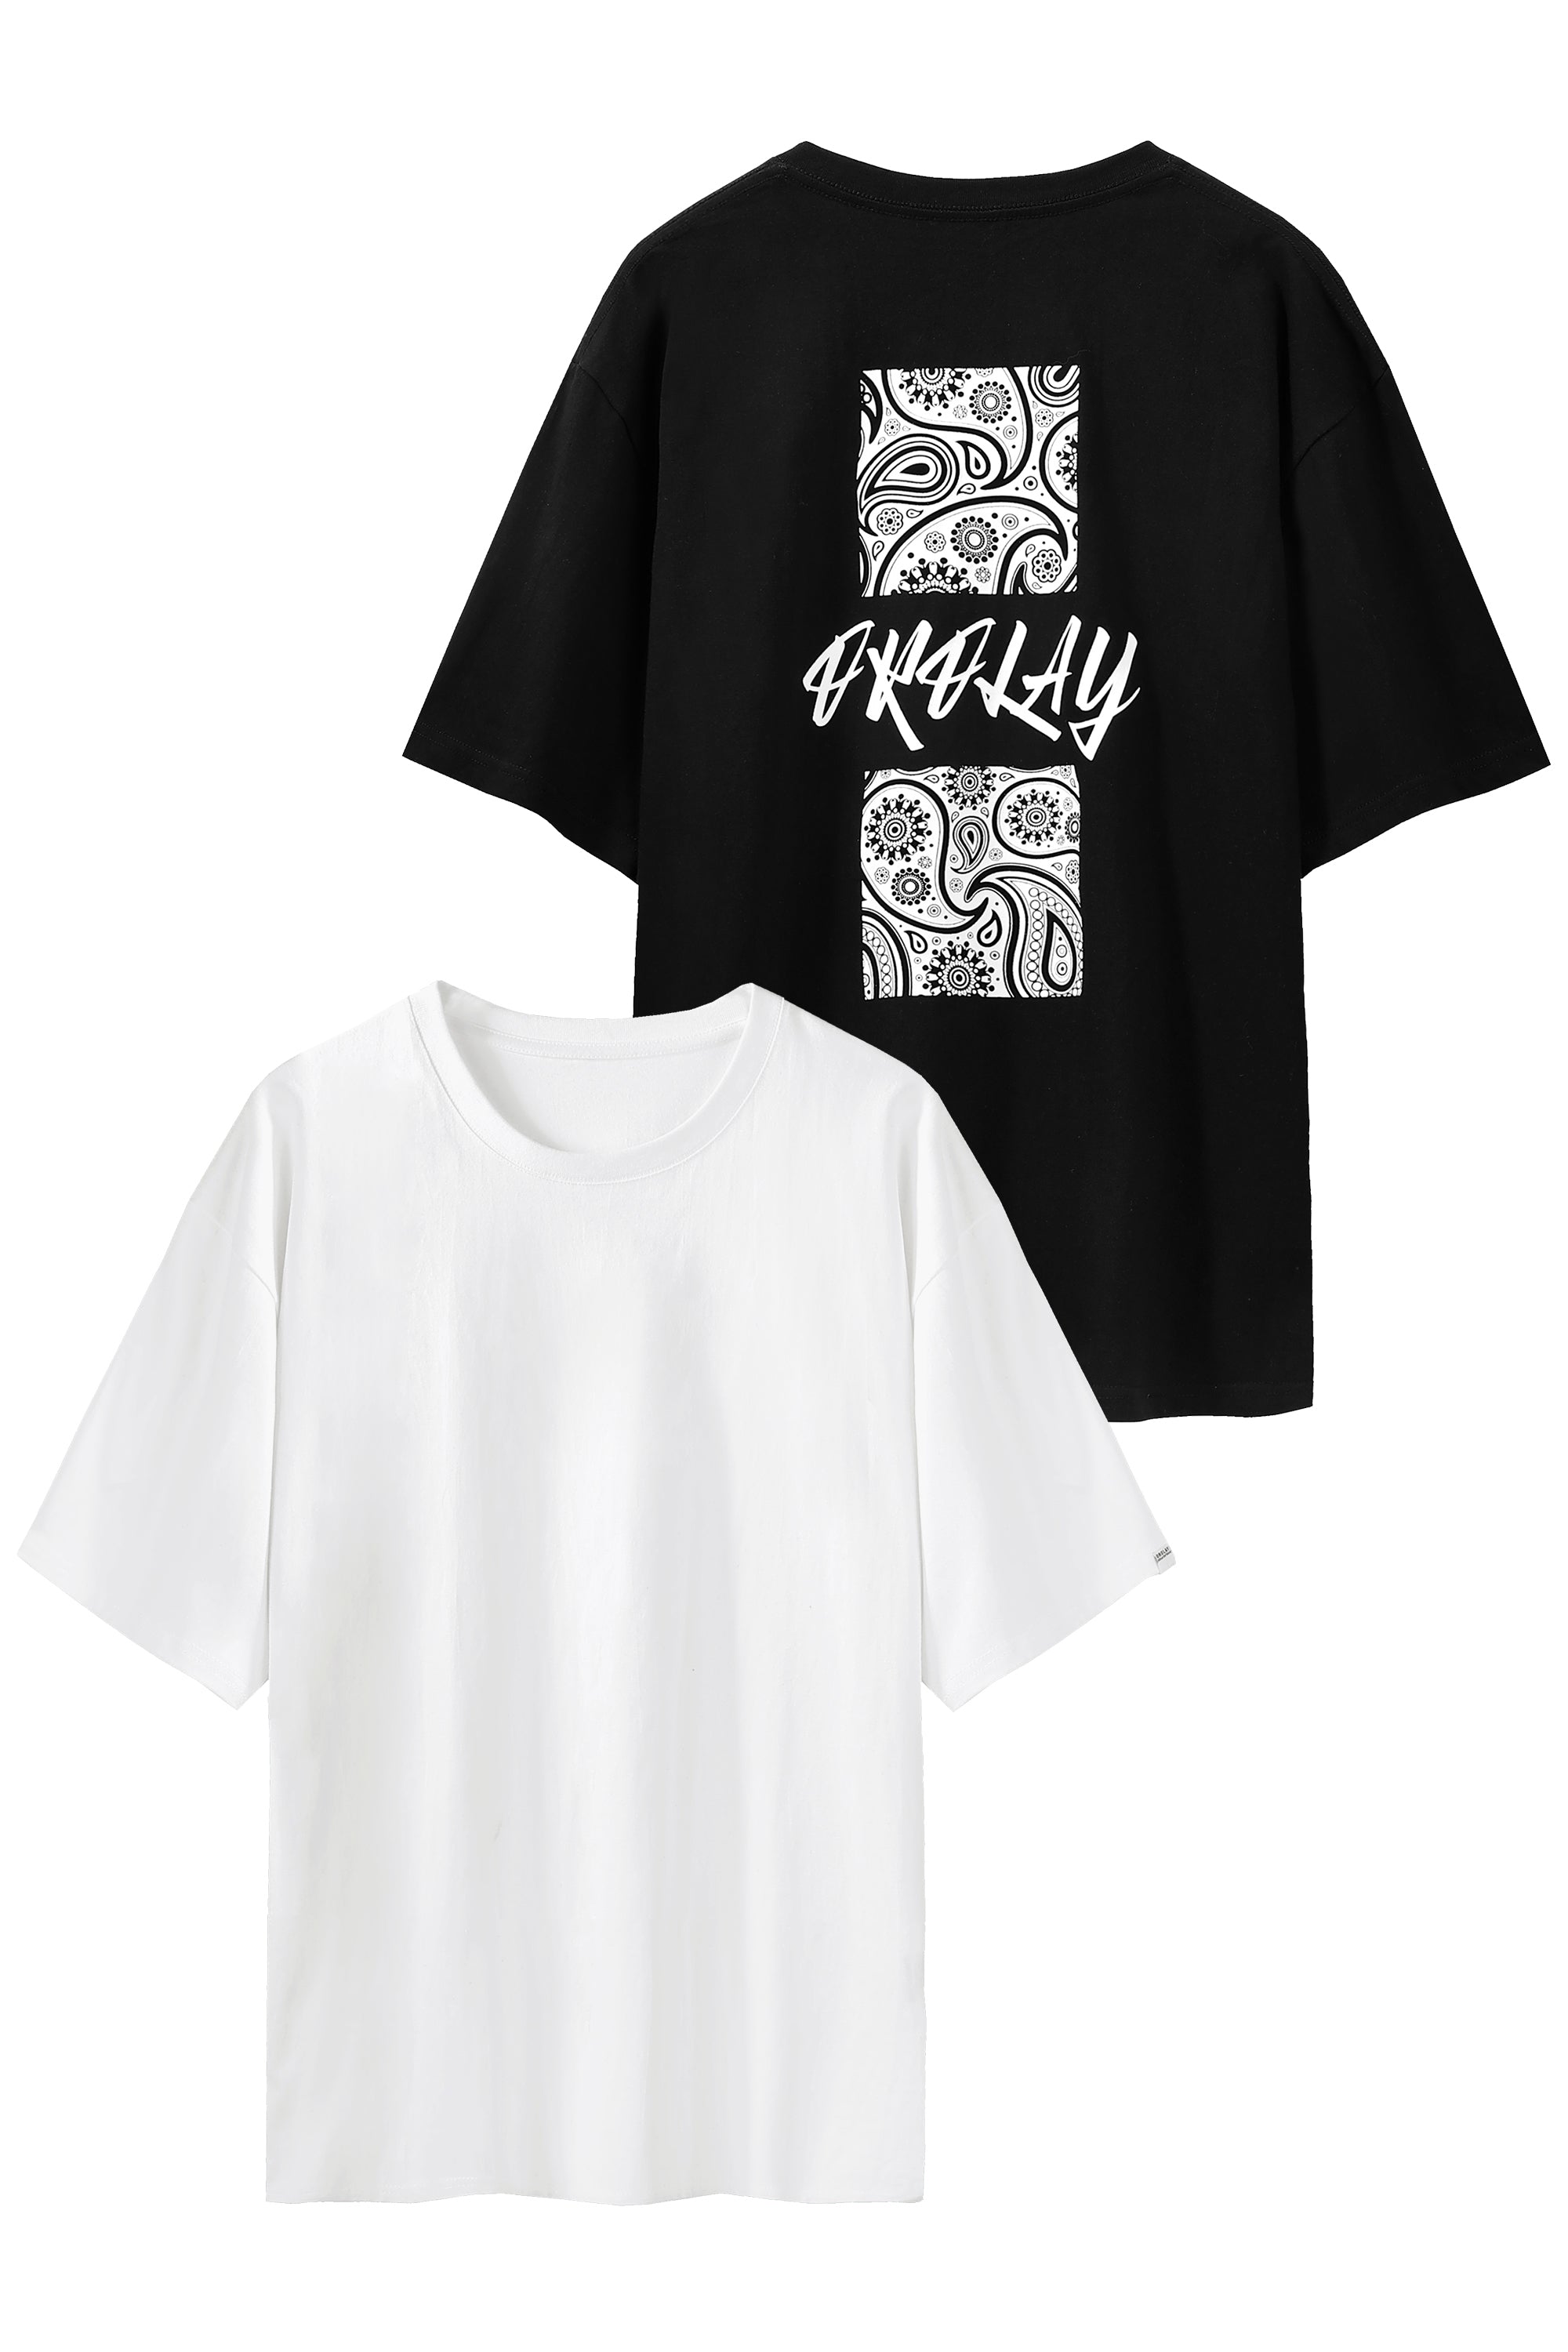 Unisex Graphic Cotton T-shirt